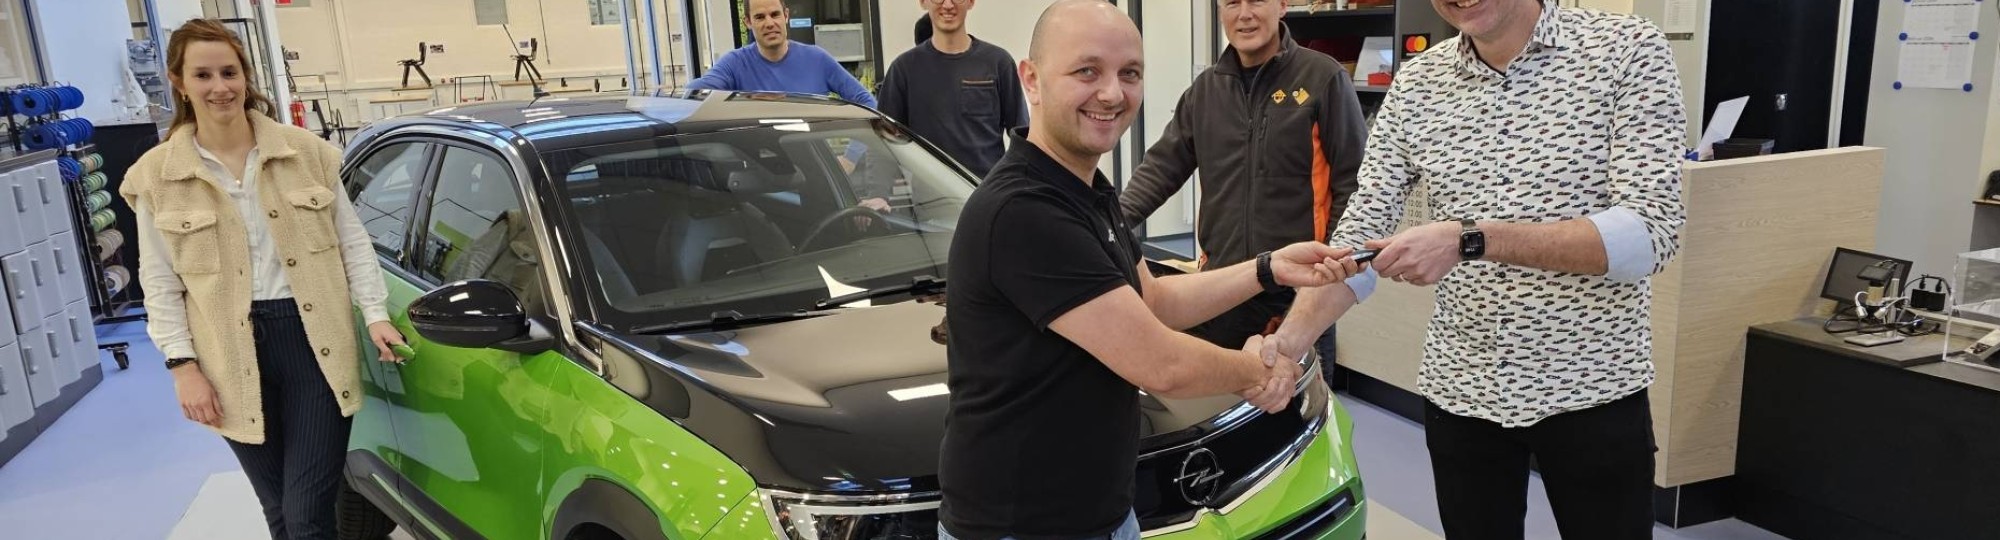 HAN Automotive heeft een Opel Mokka-e ontvangen vanuit partner NRF met als doel om met deze moderne elektrische auto onderzoek te doen binnen het hbo onderwijs.